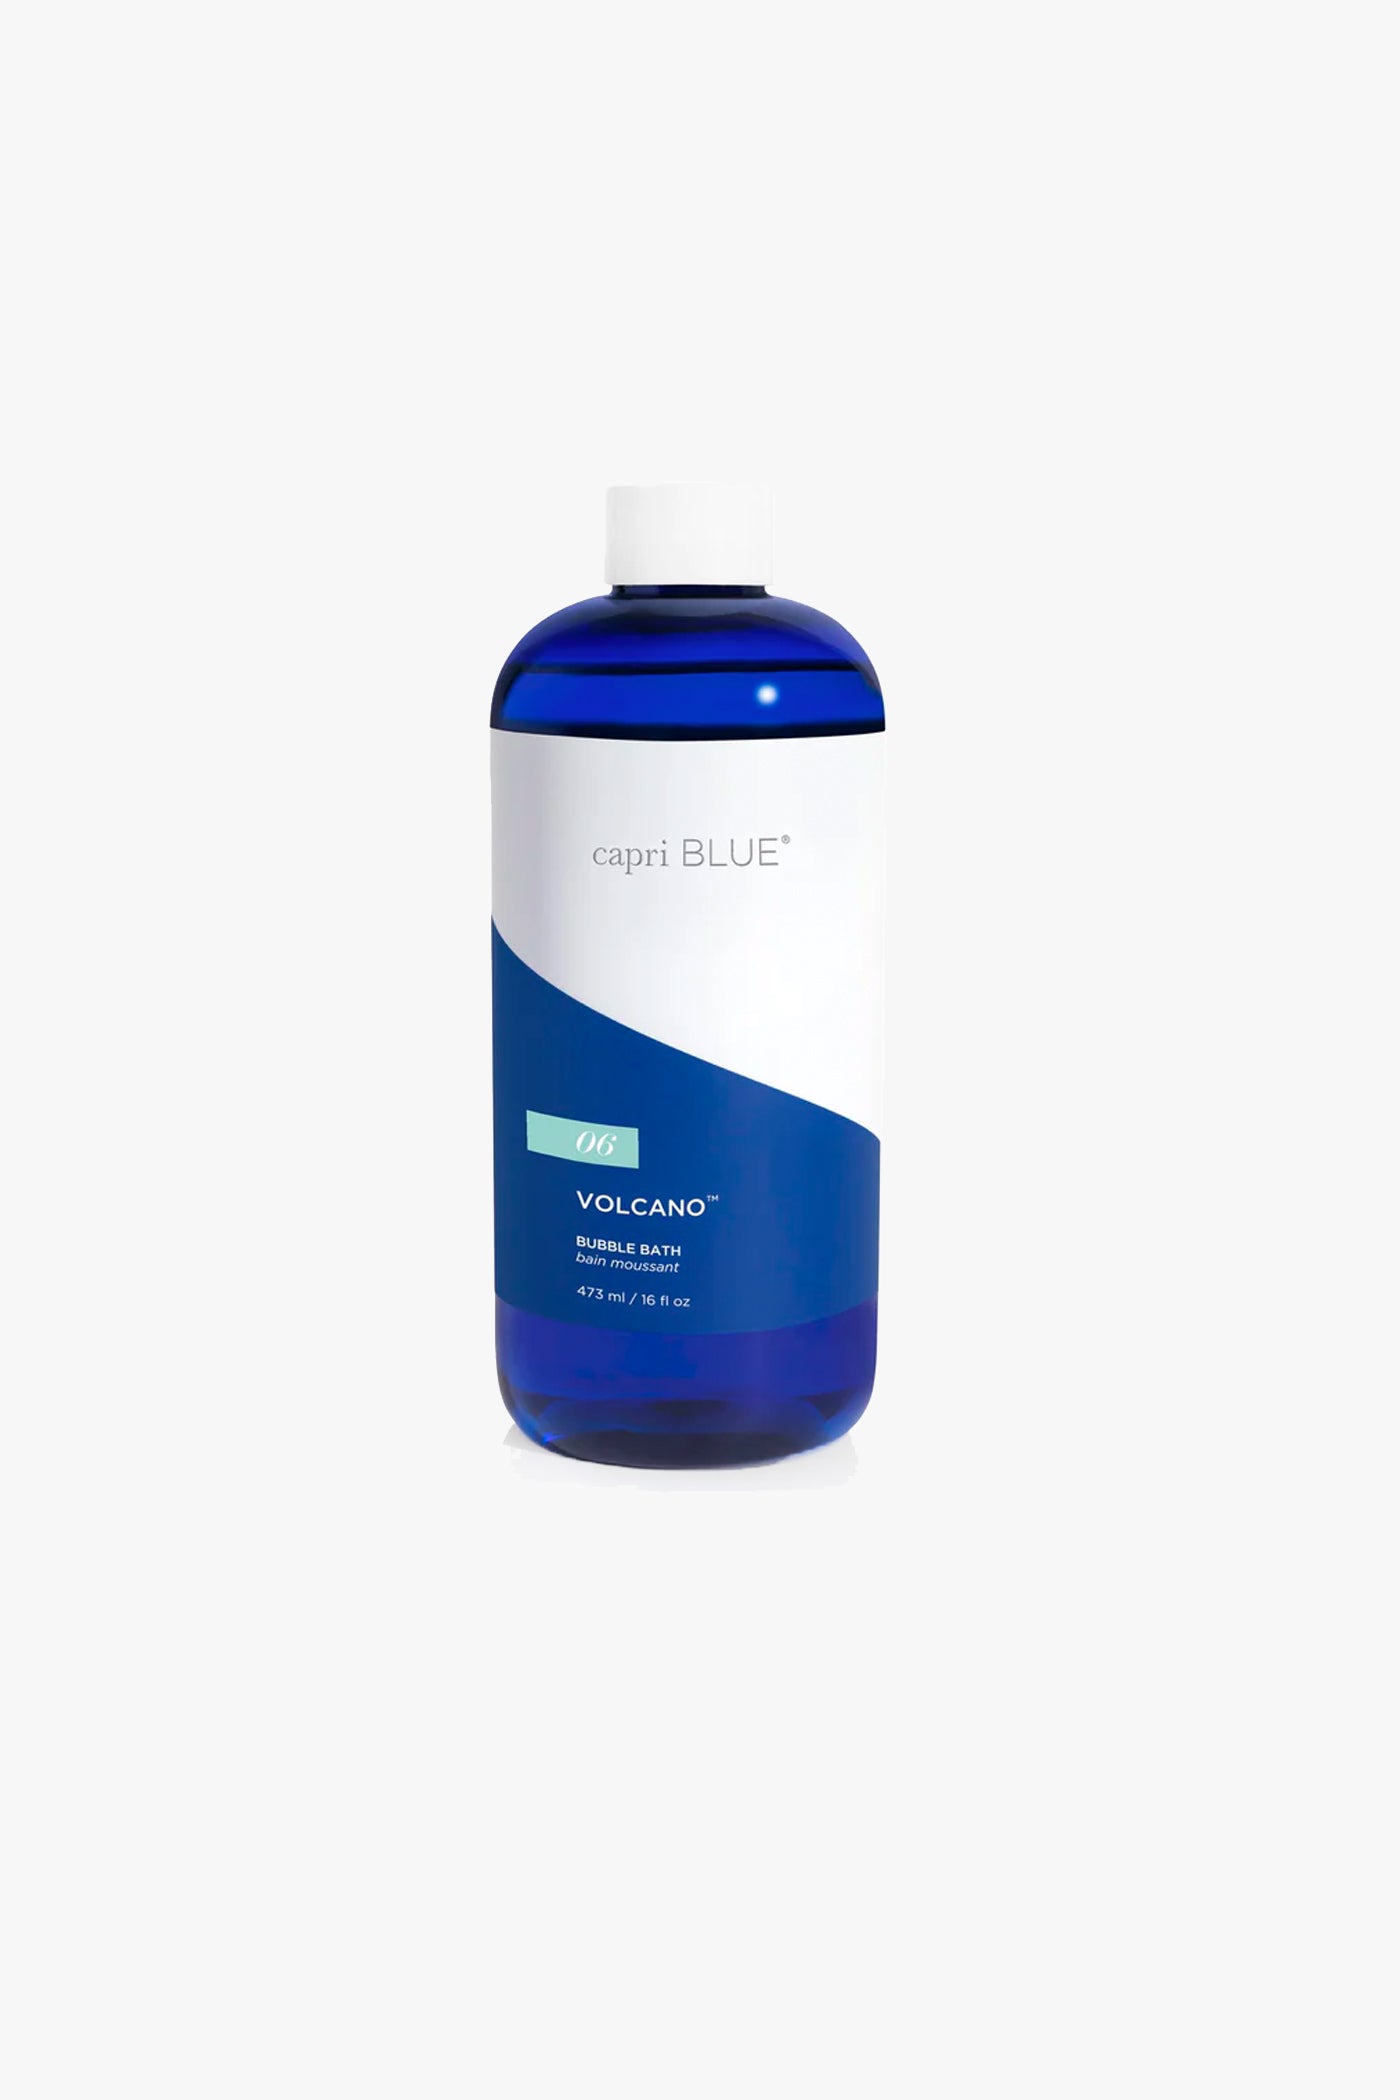 Capri Blue - Volcano Dry Body Oil